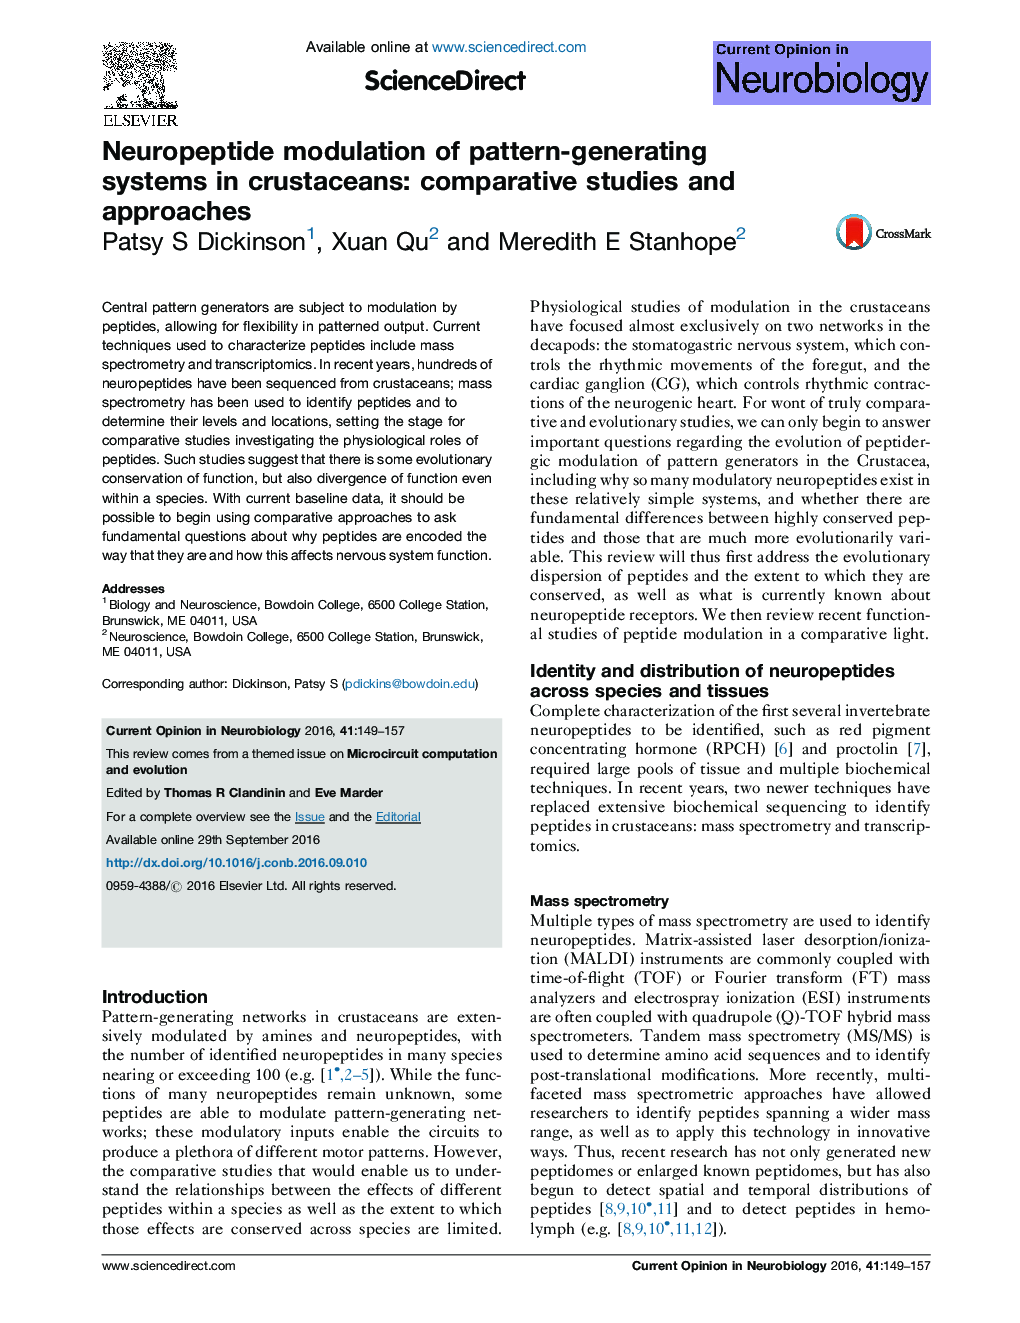 مدولاسیون نوروپپتیدی از سیستم های تولید الگوی در پوست های خالص: مطالعات و رویکردهای مقایسه ای 